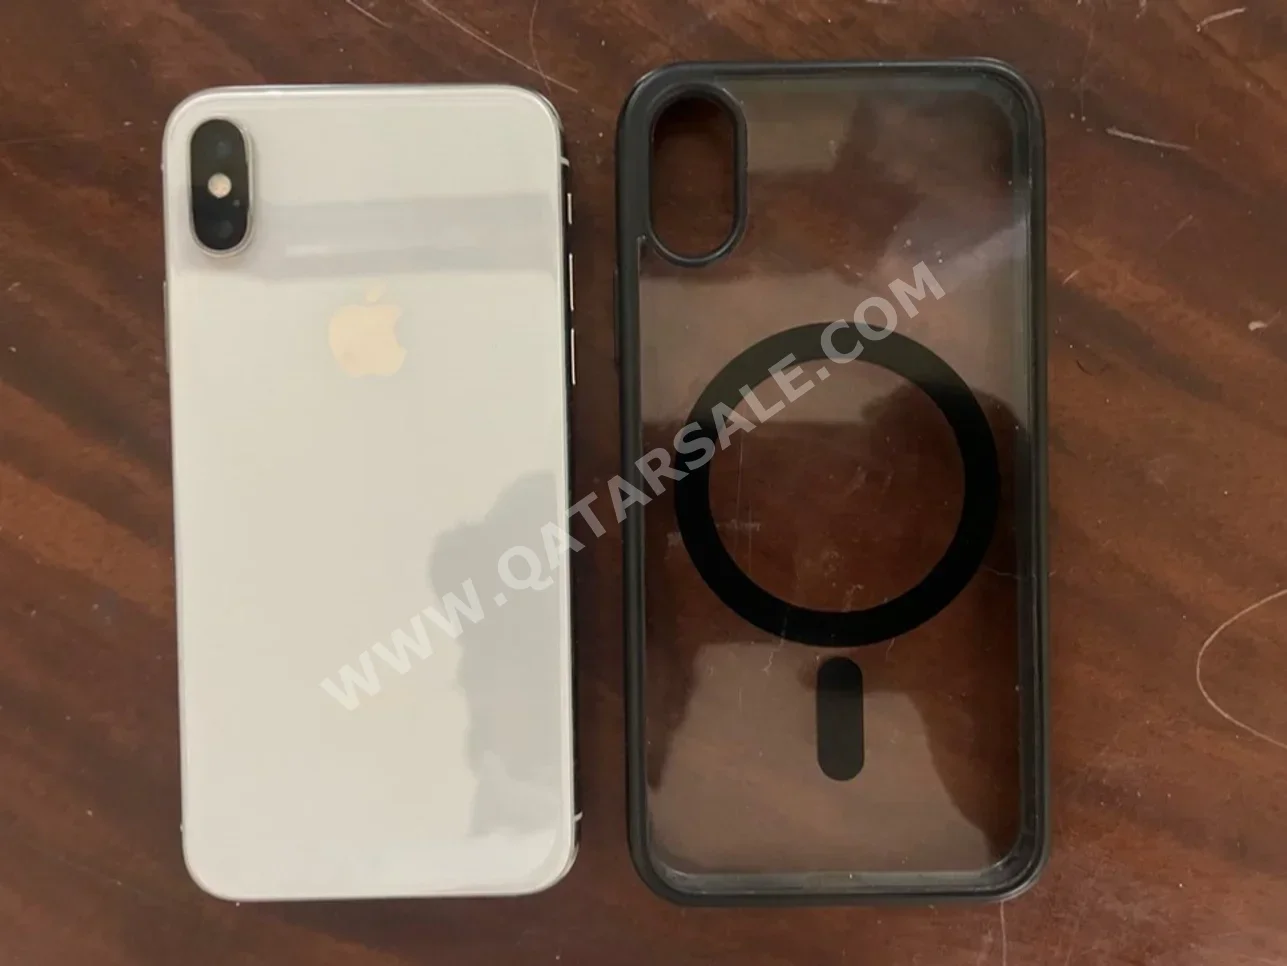 Apple  - iPhone  - X  - White  - 64 GB  - Under Warranty